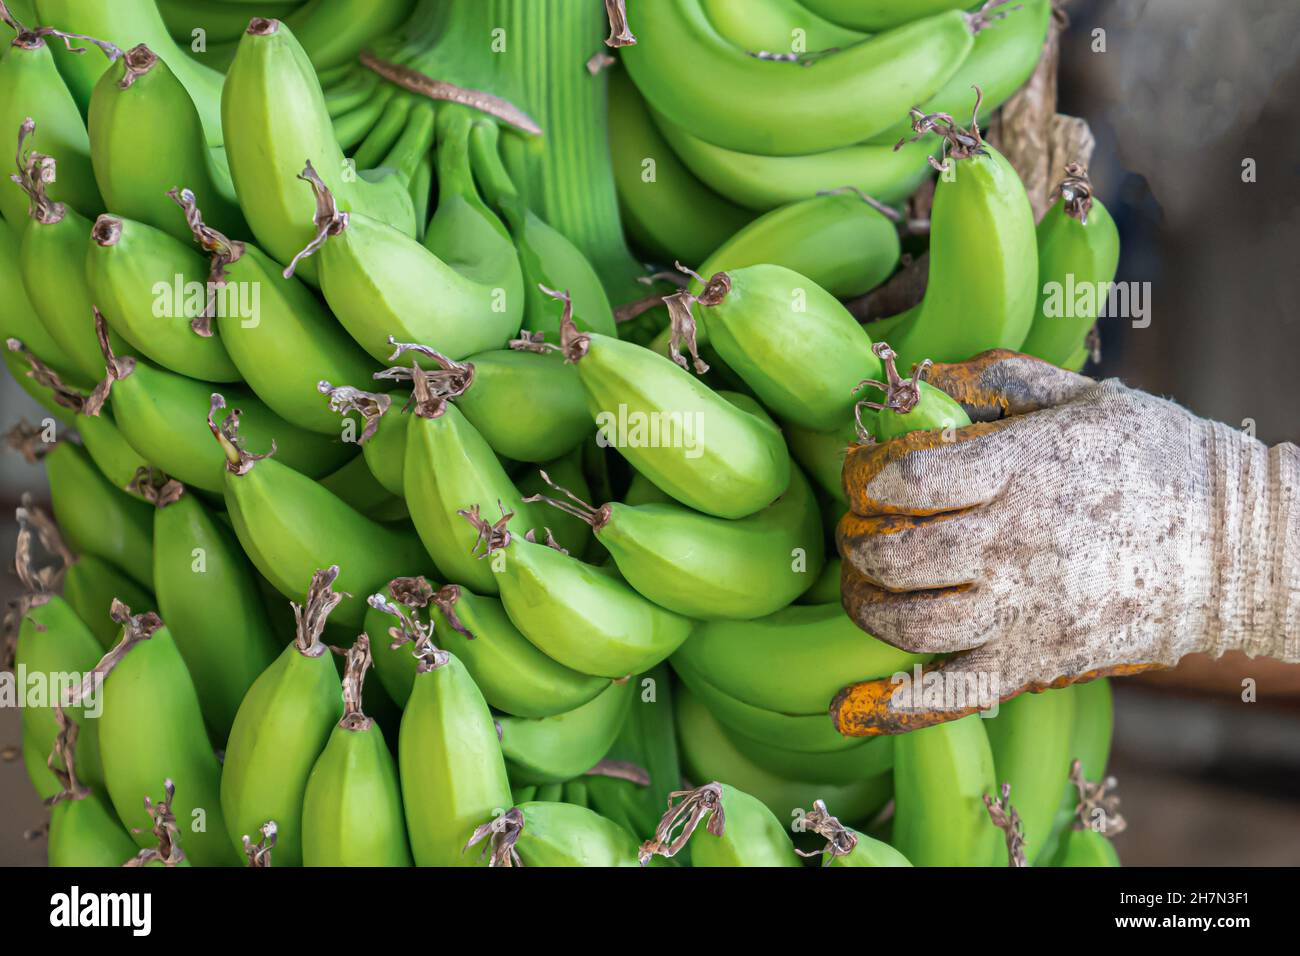 Grand bouquet de bananes mûres vertes entre les mains des hommes.Préparation de bananes pour la vente en gros.Gros plan. Banque D'Images